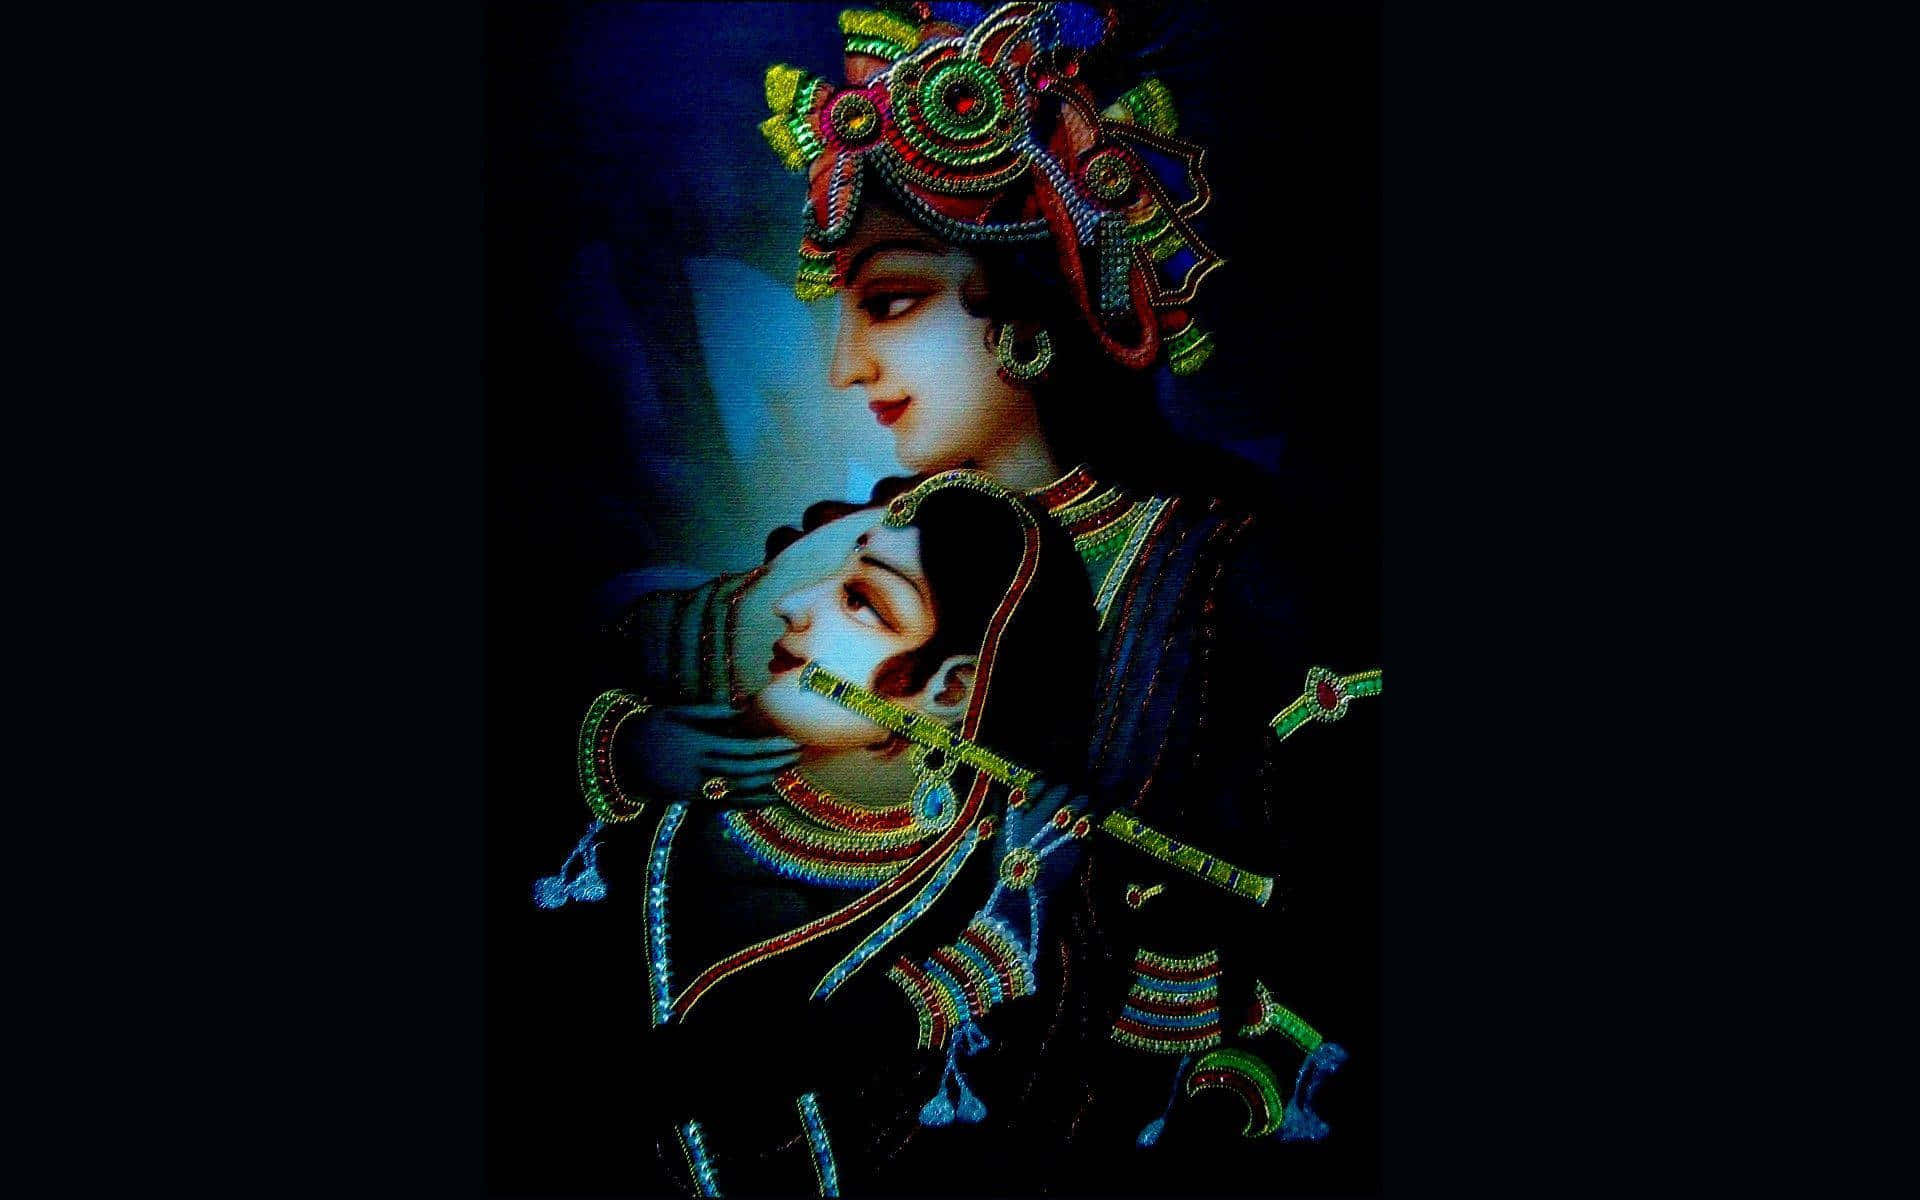 Imagende Krishna Y Radha En Tonos Azul Neón Y Negro